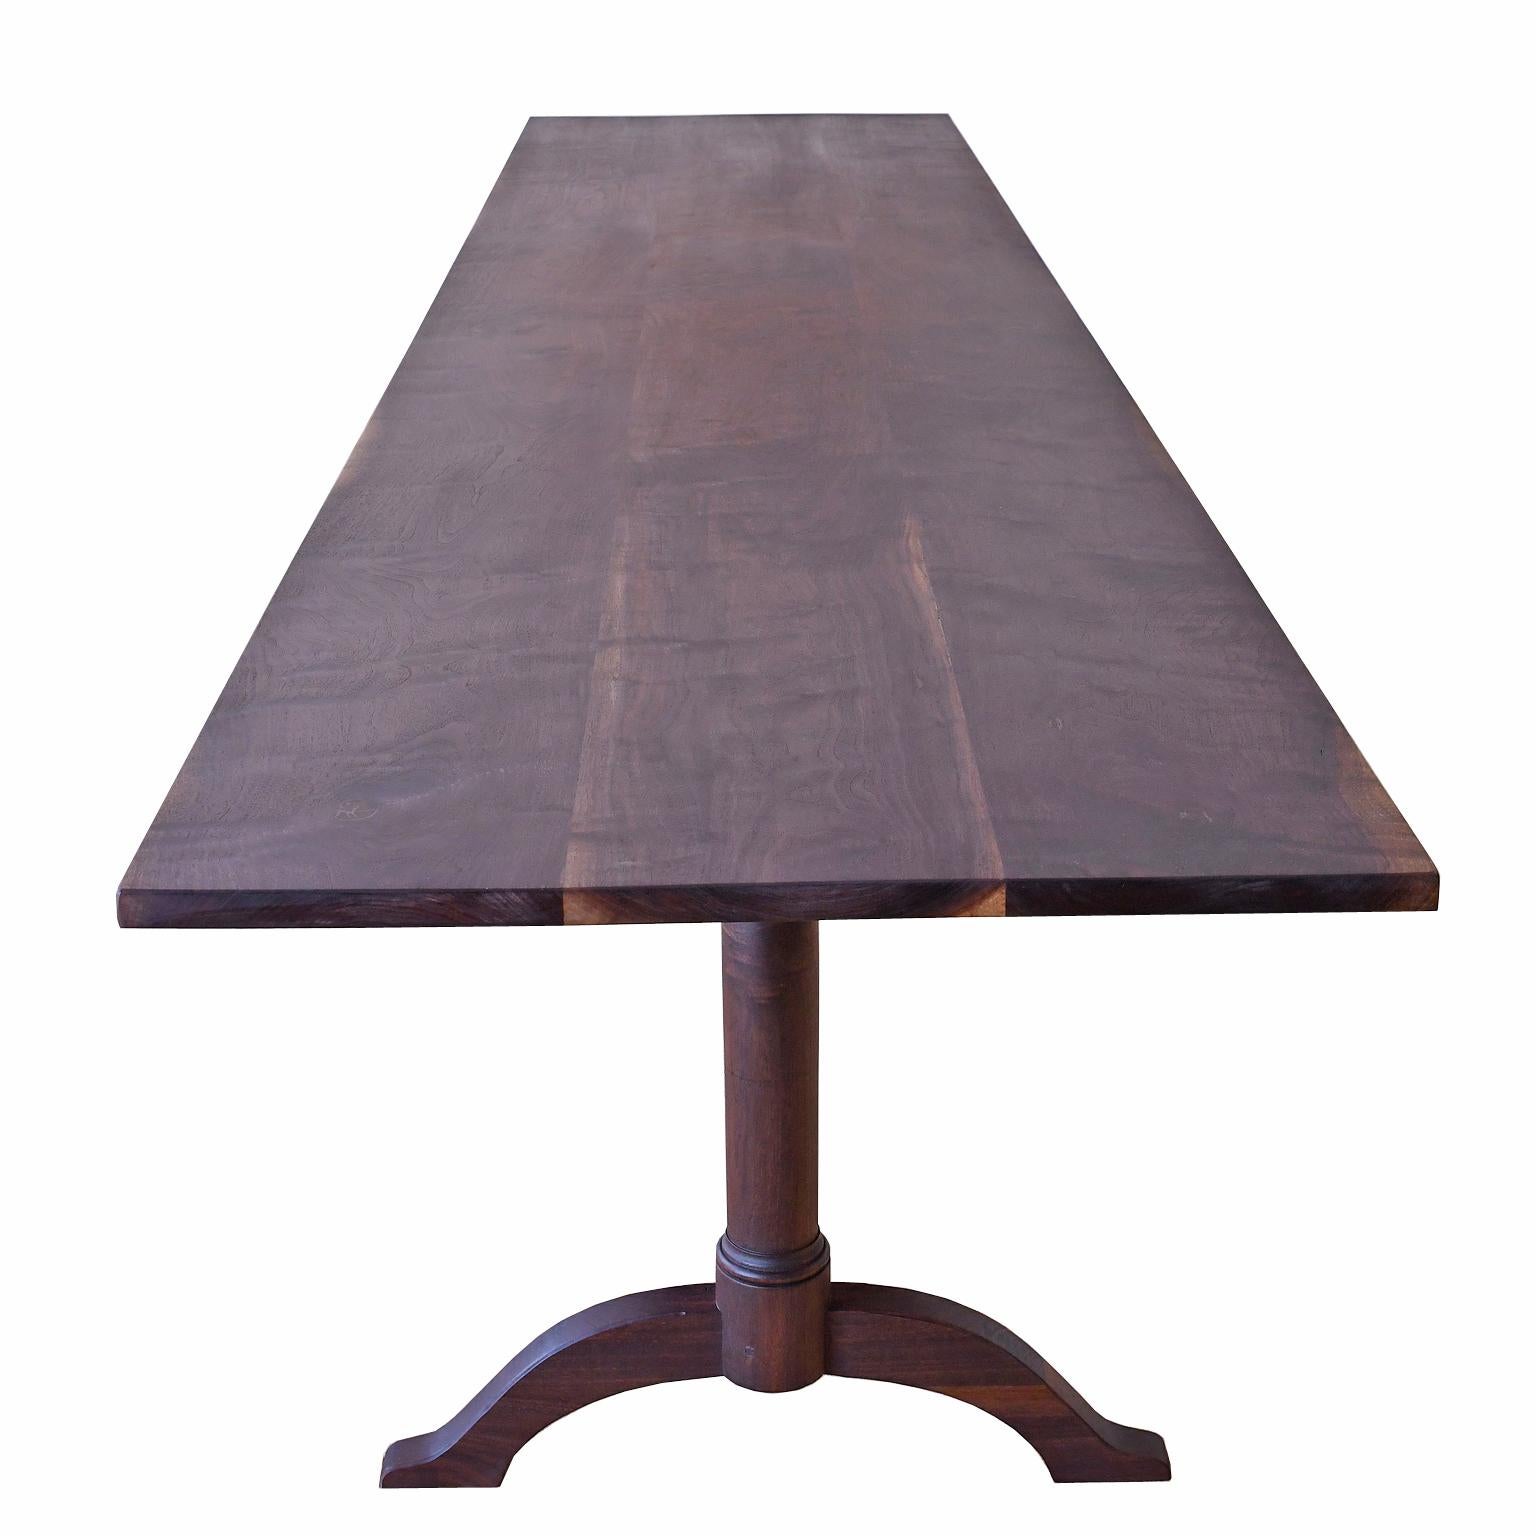 Dieser Tisch ist wie abgebildet sofort lieferbar oder fragen Sie uns nach einem Angebot für eine Sondergröße
Ein von Hancock Village (Shaker) inspirierter Esstisch oder eine Anrichte nach Maß von Bonnin Ashley aus amerikanischem Schwarznussbaum mit